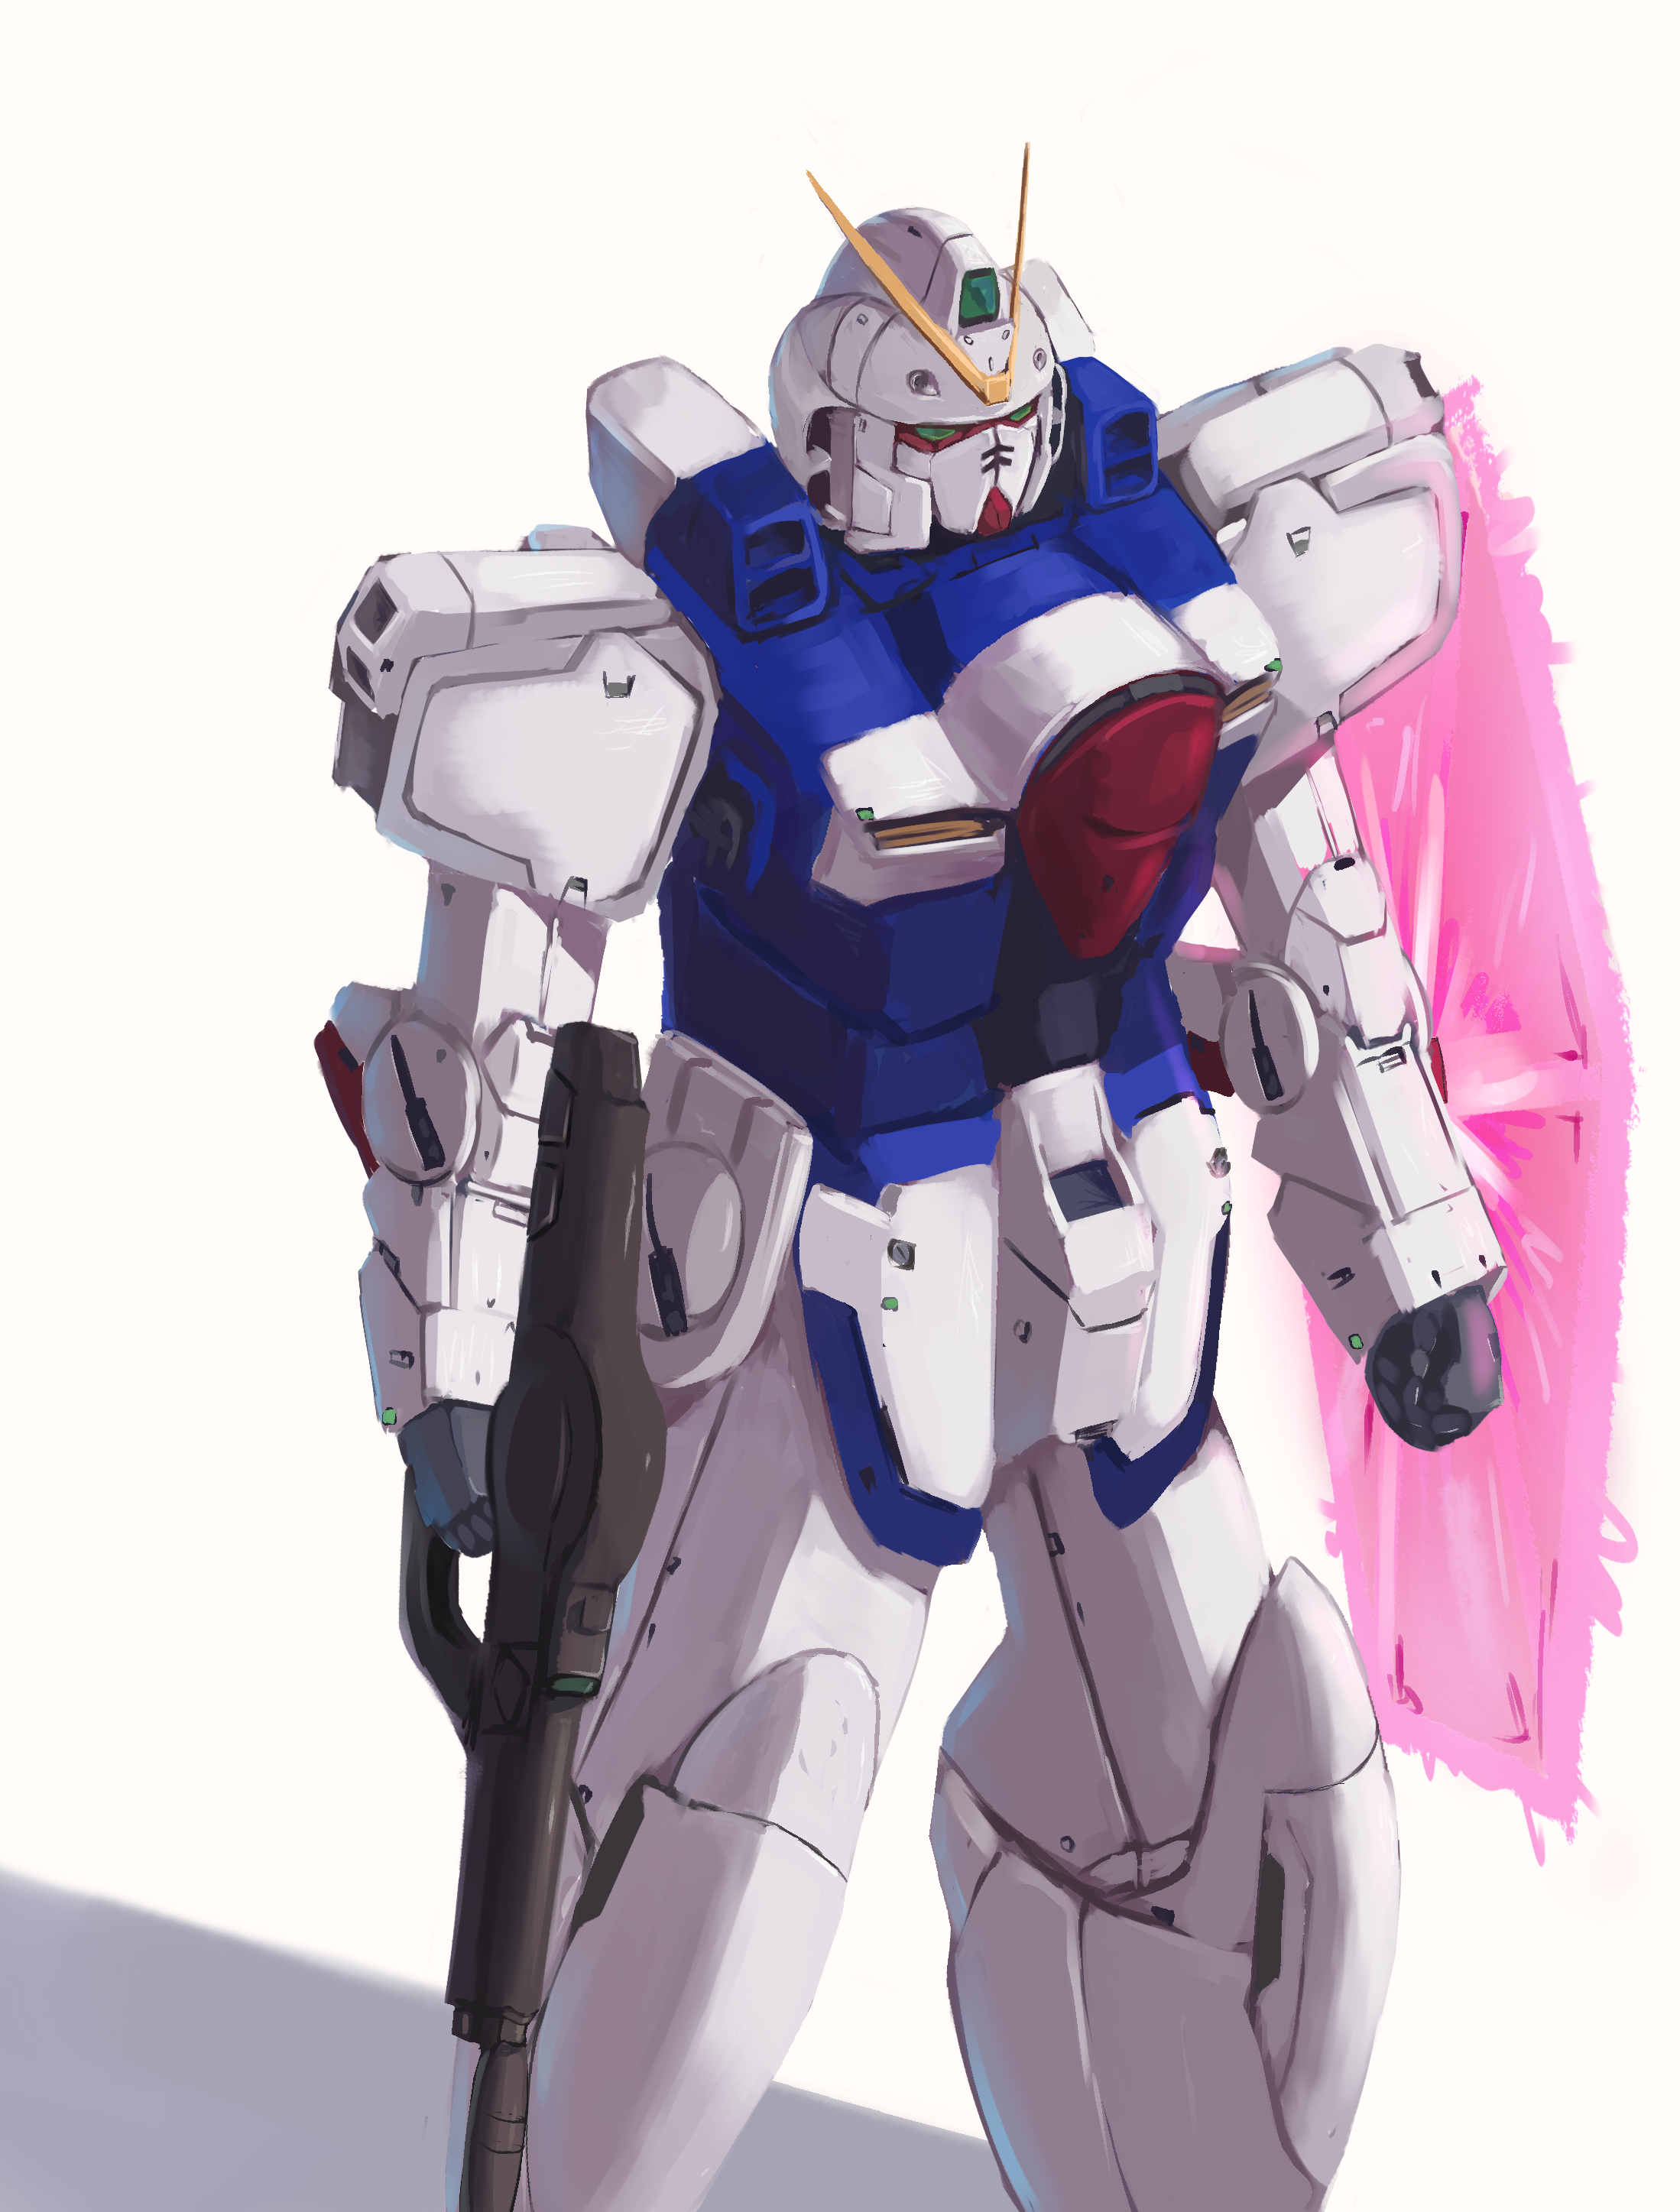 Anime 2198x2894 V Gundam anime mechs Gundam Super Robot Taisen Mobile Suit V Gundam artwork digital art fan art